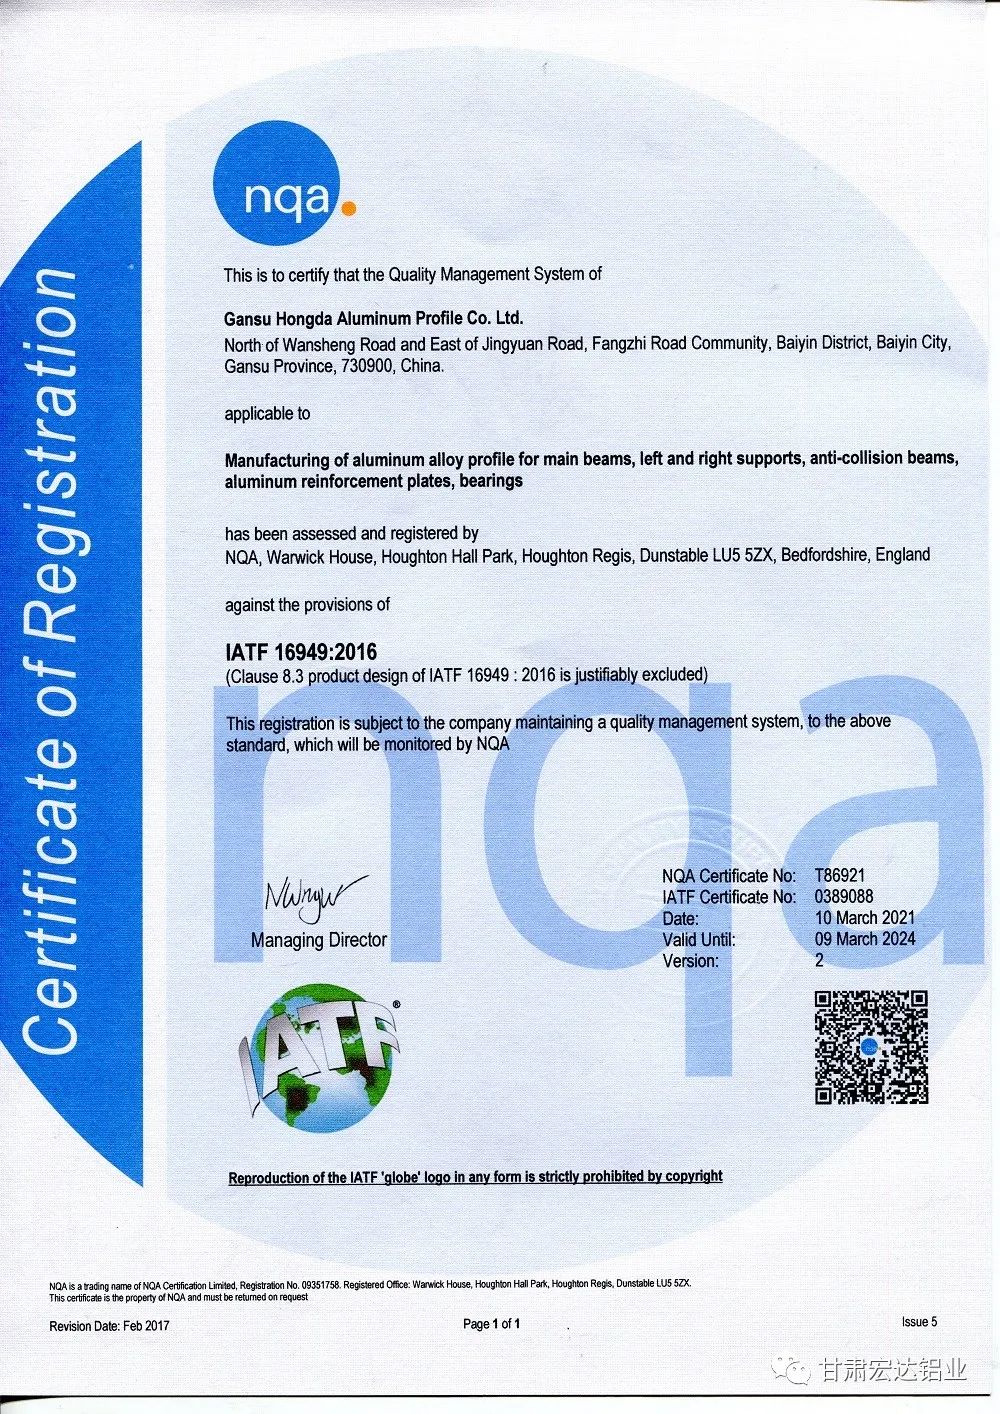 甘肃宏达铝业通过IATF16949汽车行业管理体系扩项审核